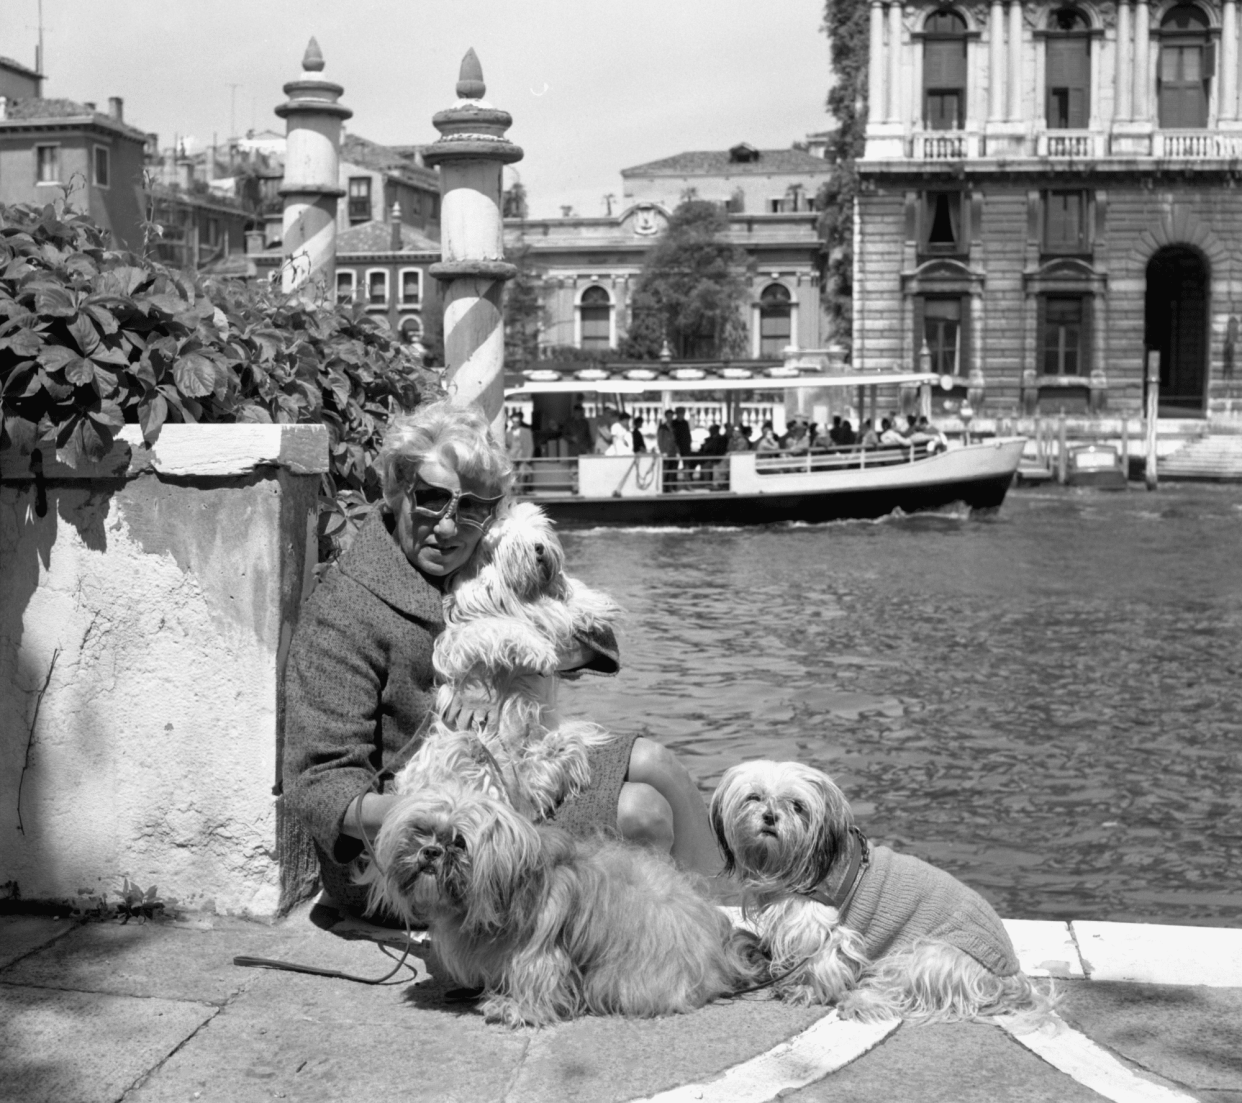 <span>Peggy Guggenheim and dogs at her palazzo in Venice, 1973.</span><span>Photograph: Solomon R Guggenheim Foundation, Venice, Photo Archivio Cameraphoto Epoche, Gift, Cassa di Risparmio di Venezia, 2005</span>